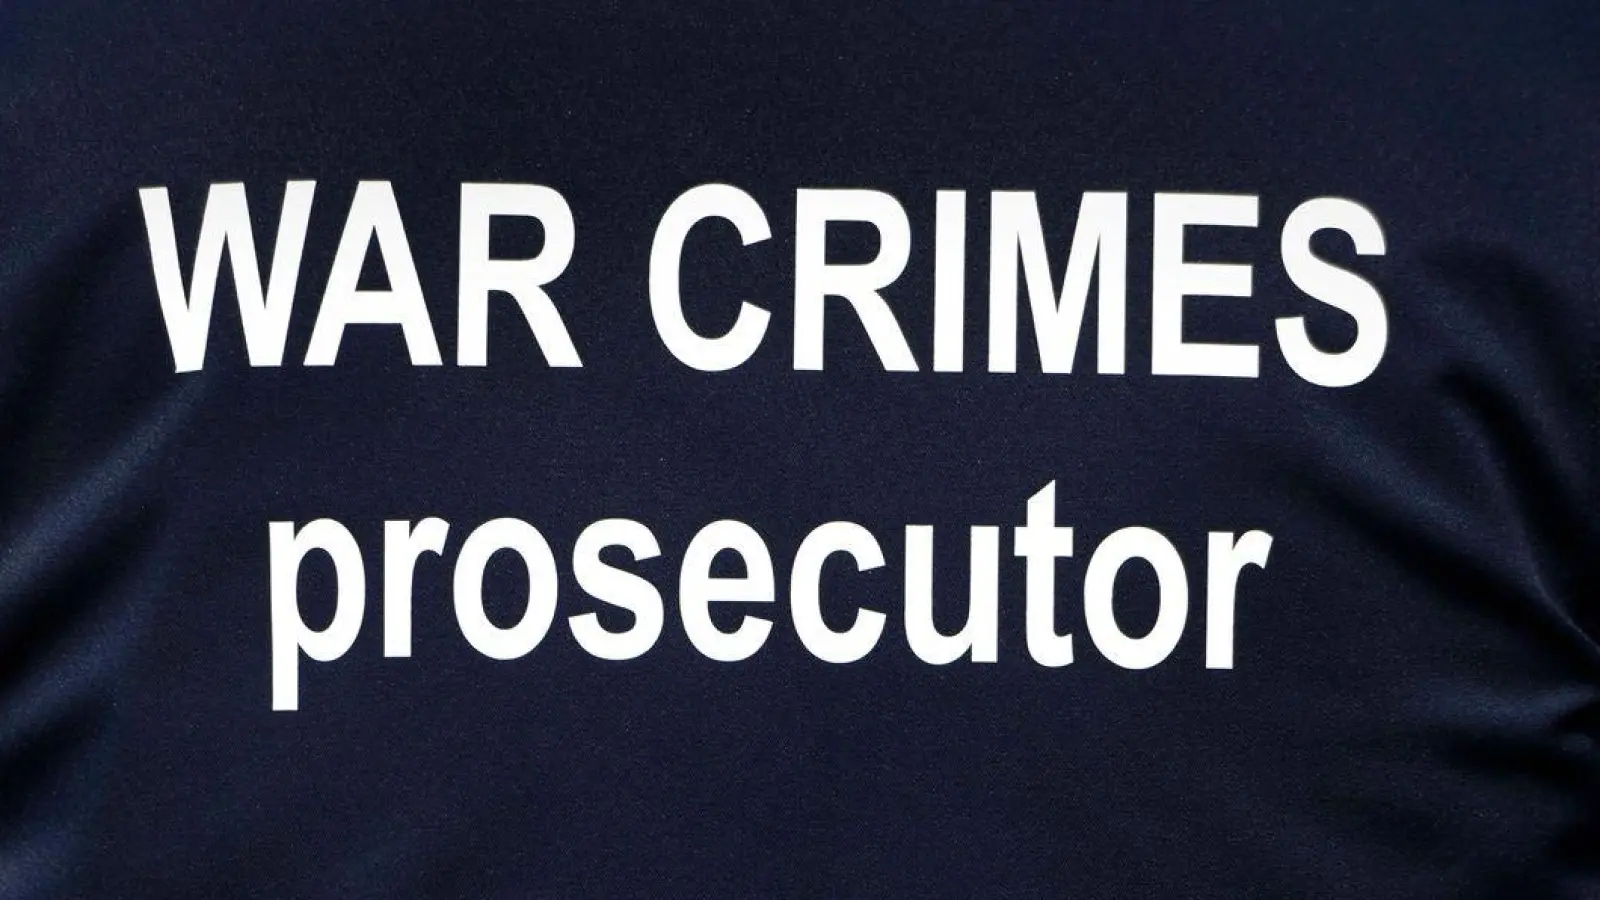 „War Crimes Prosecutor“ („Ankläger für Kriegsverbrechen“)<br>Ein Ermittler eines internationalen Forensik-Teams. (Foto: Carol Guzy/ZUMA/dpa)